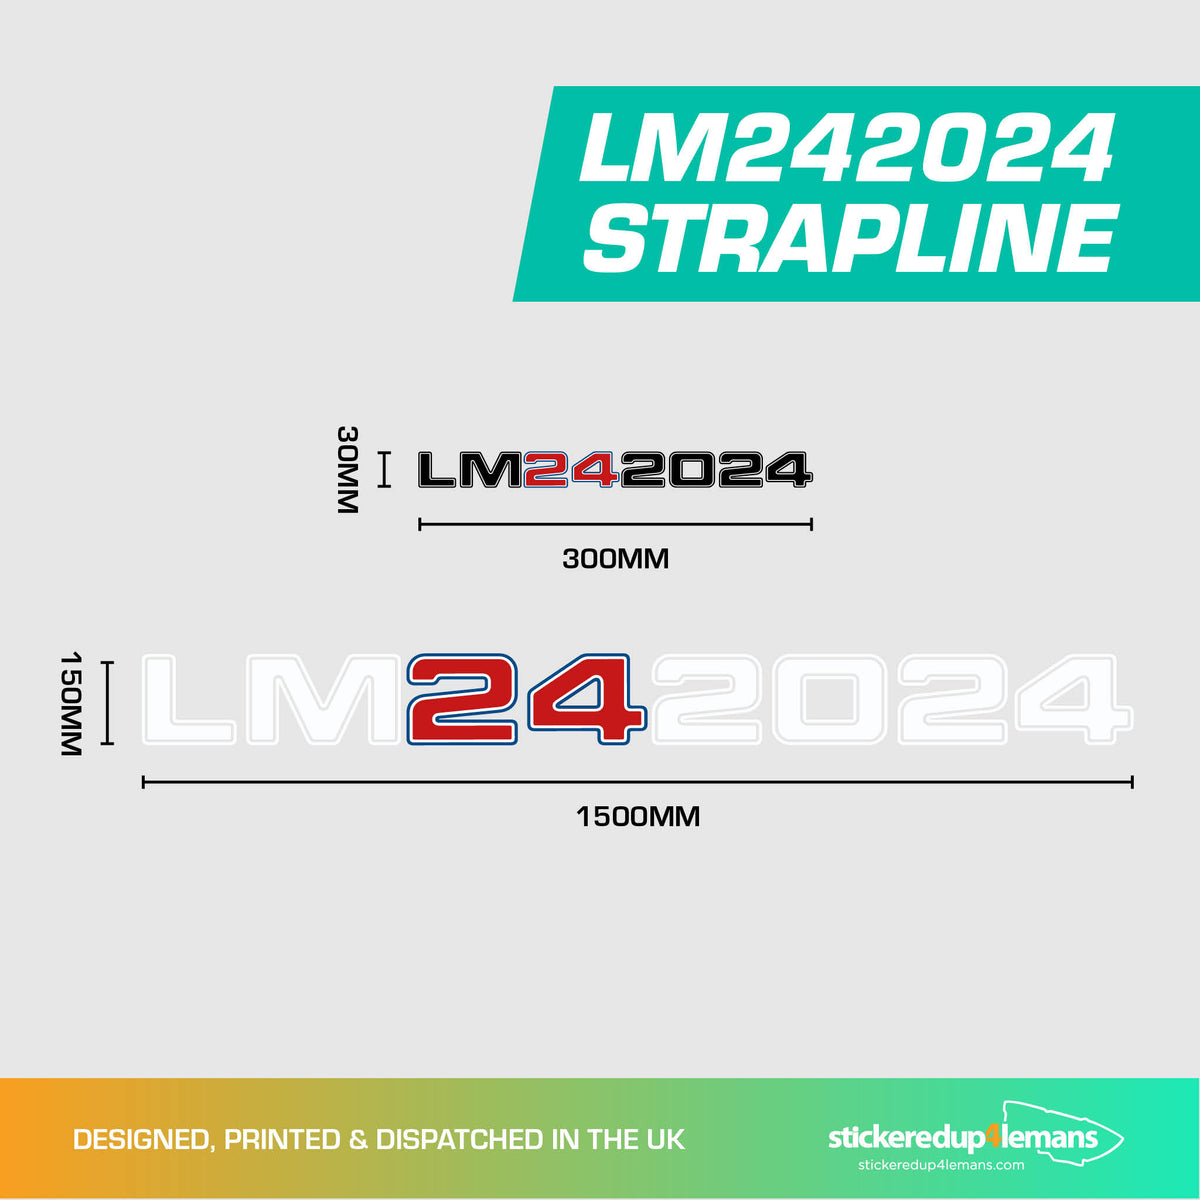 LM242024 Strapline Sticker